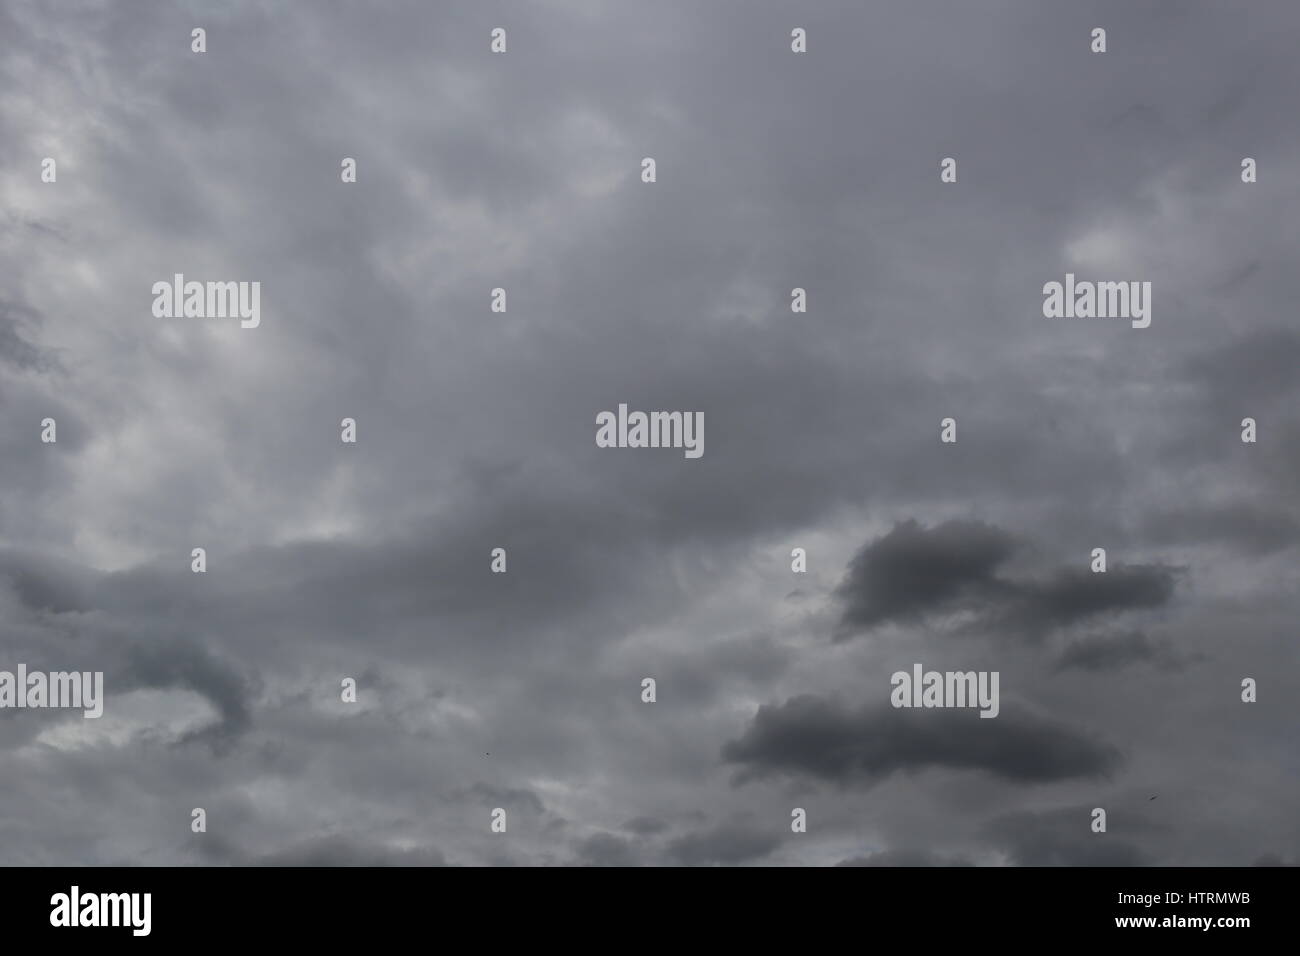 Bedecktem Himmel von Regenwolken am Himmel im Konzept des Klimas, schlechtem Wetter tagsüber bilden. Stockfoto